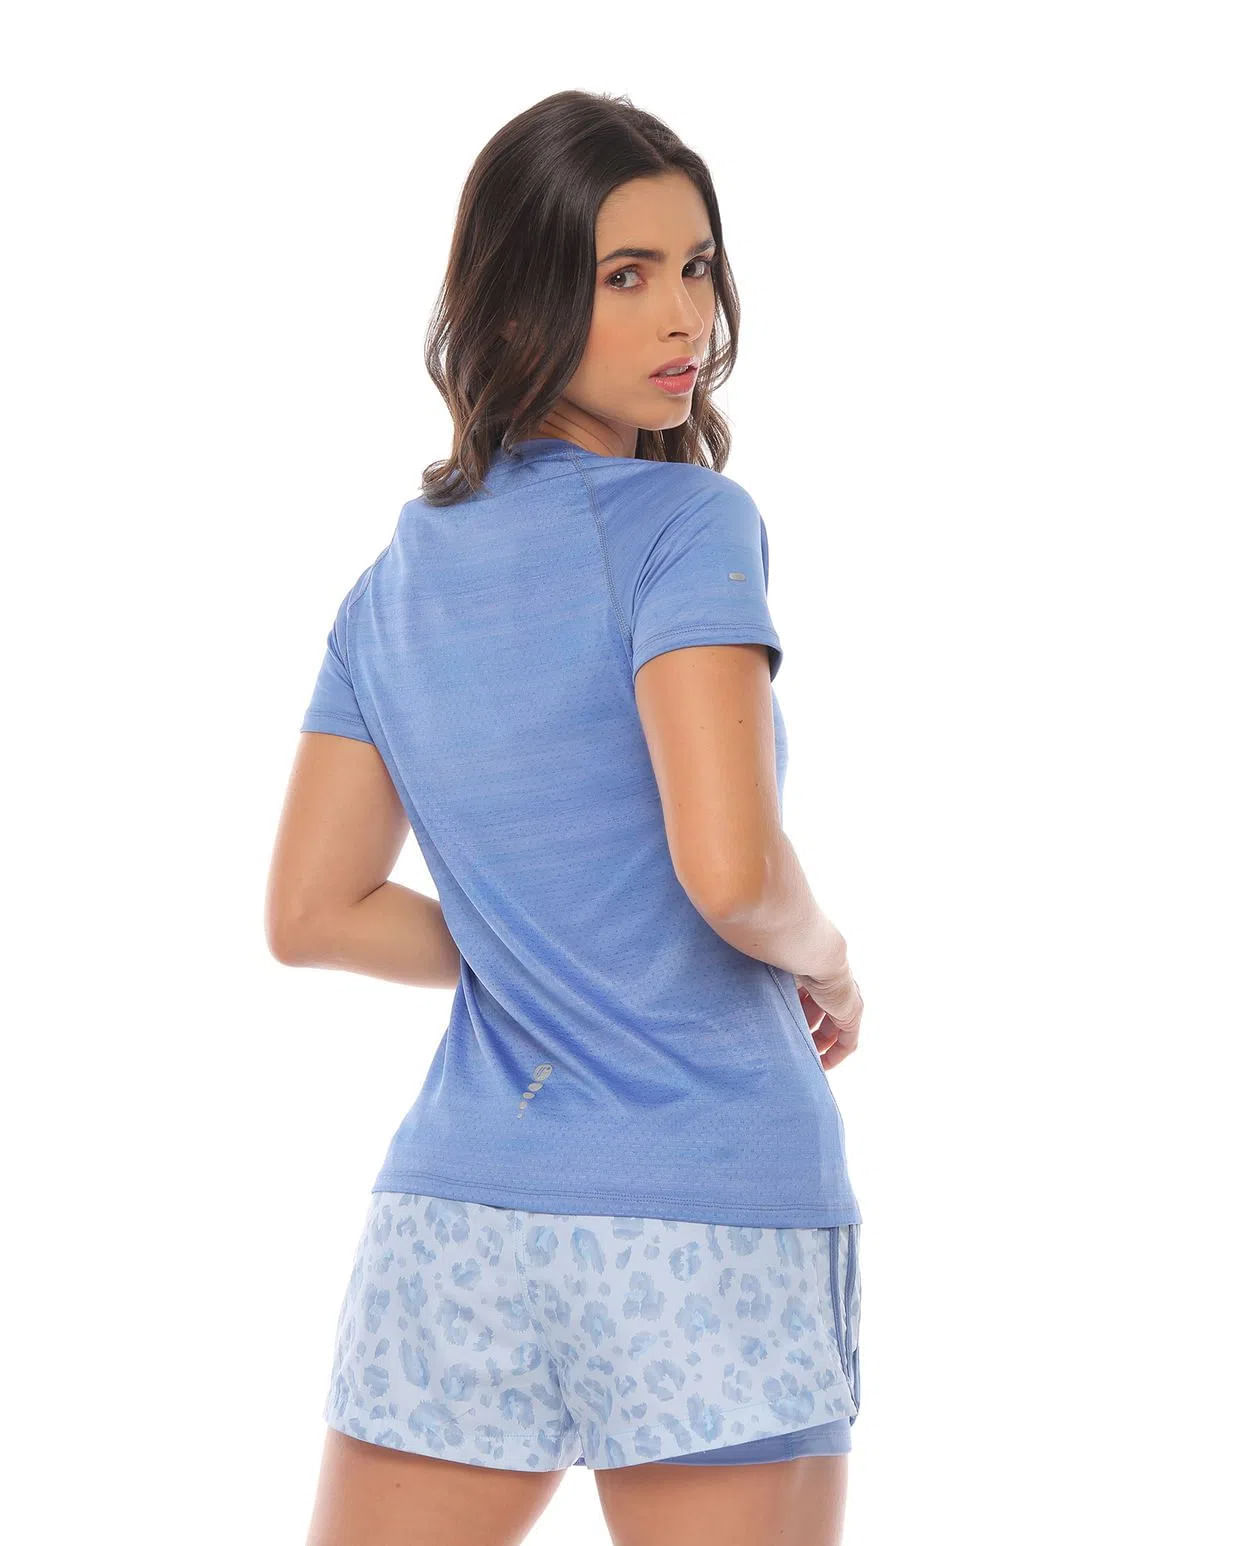 Camiseta Deportiva Manga Corta Azul para Mujer parte trasera